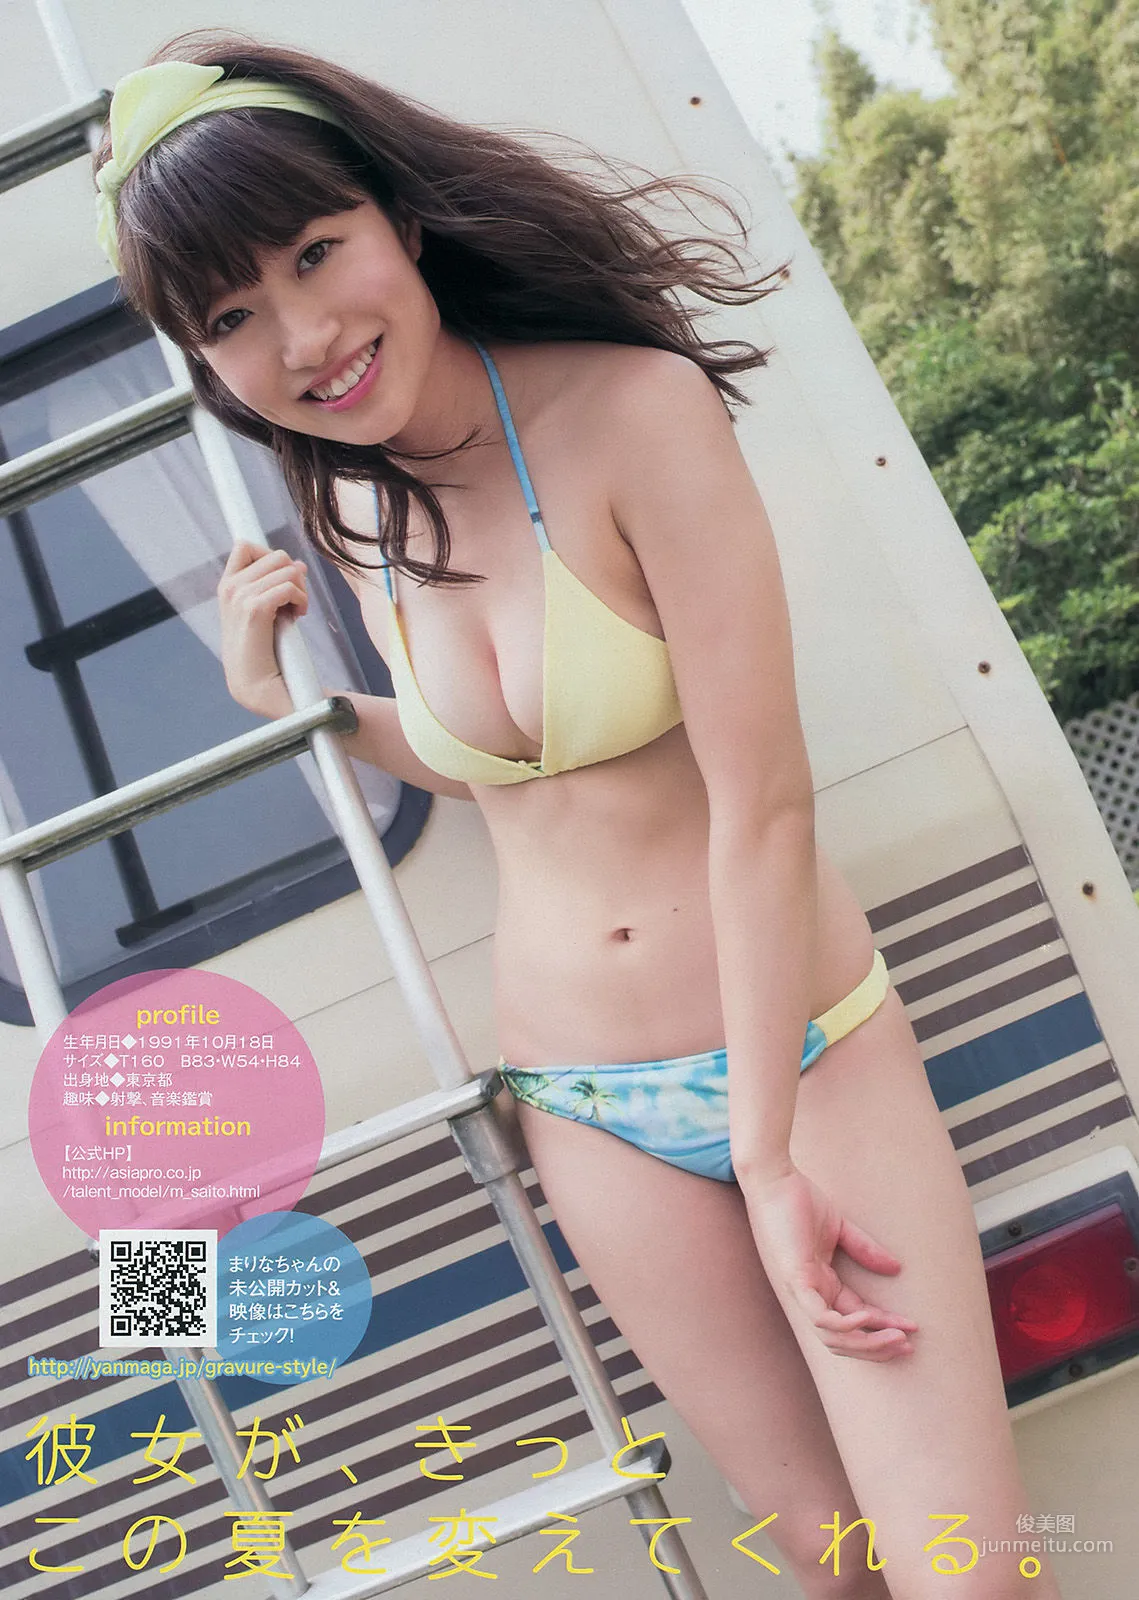 [Young Magazine] 中村静香 さいとうまりな 2014年No.36-37 写真杂志12